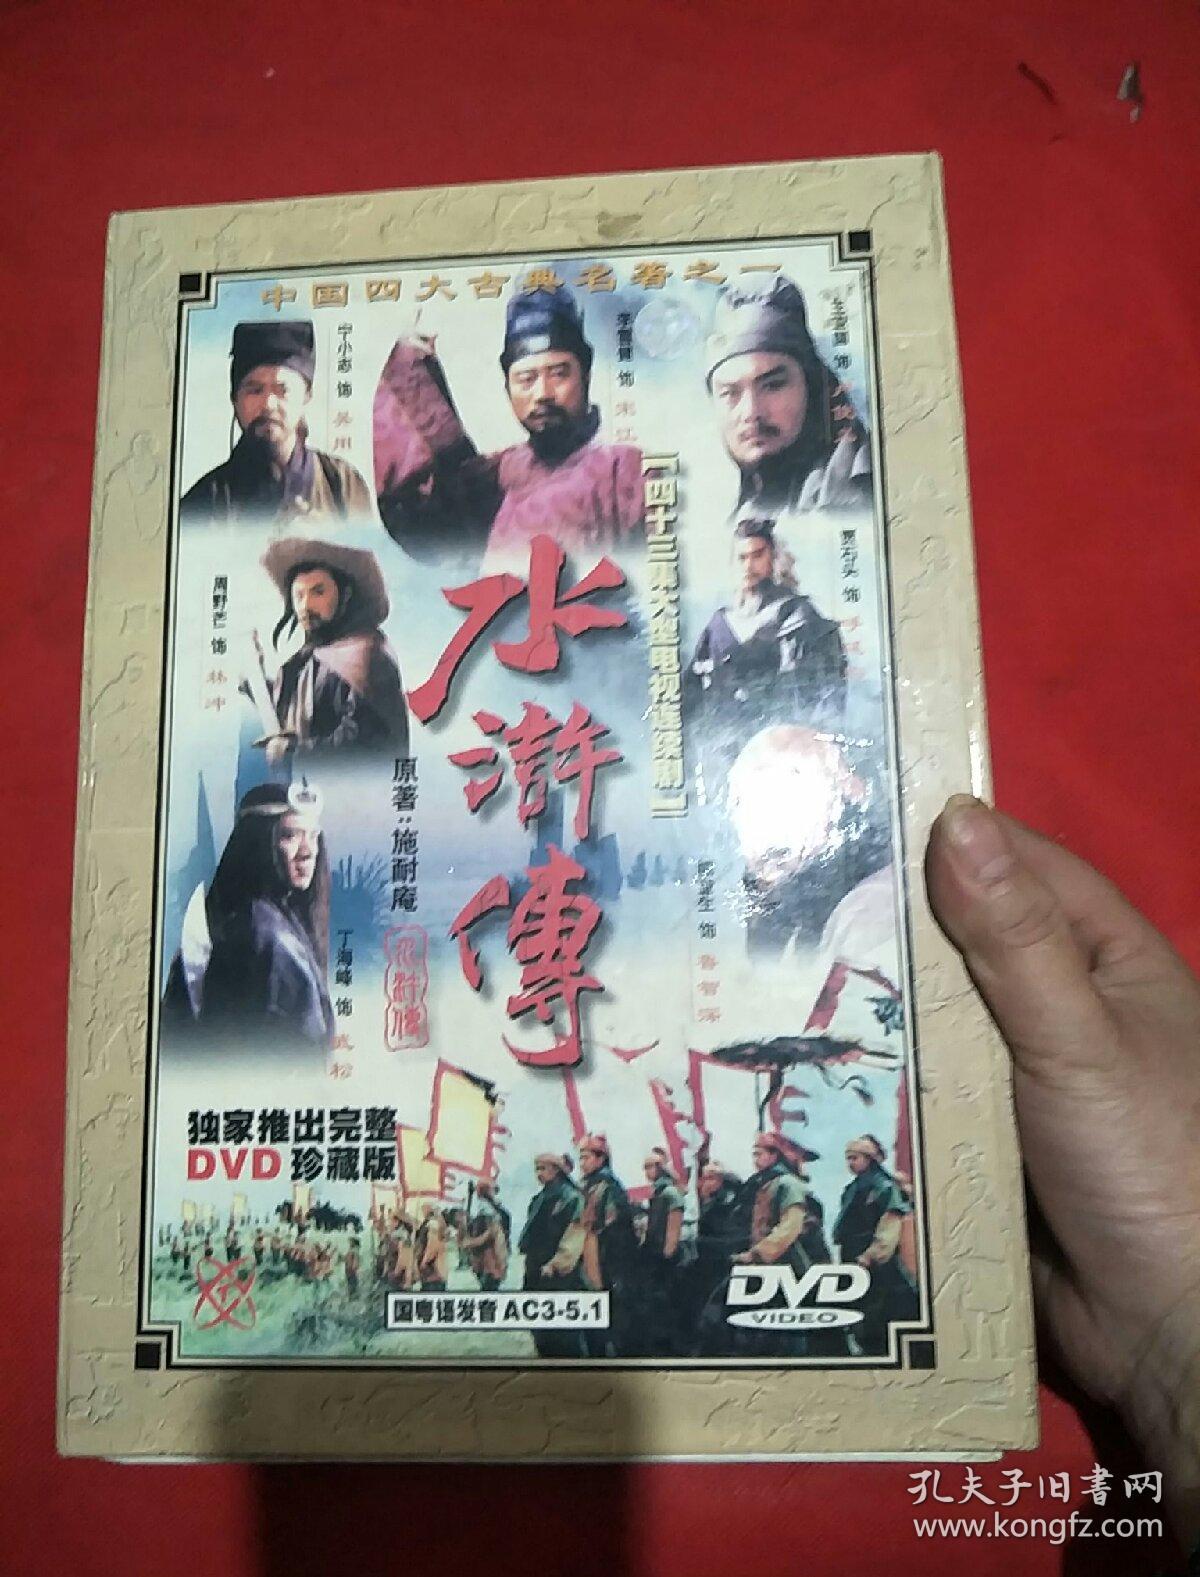 水浒传(四十三集大型电视连续剧 独家推出完整